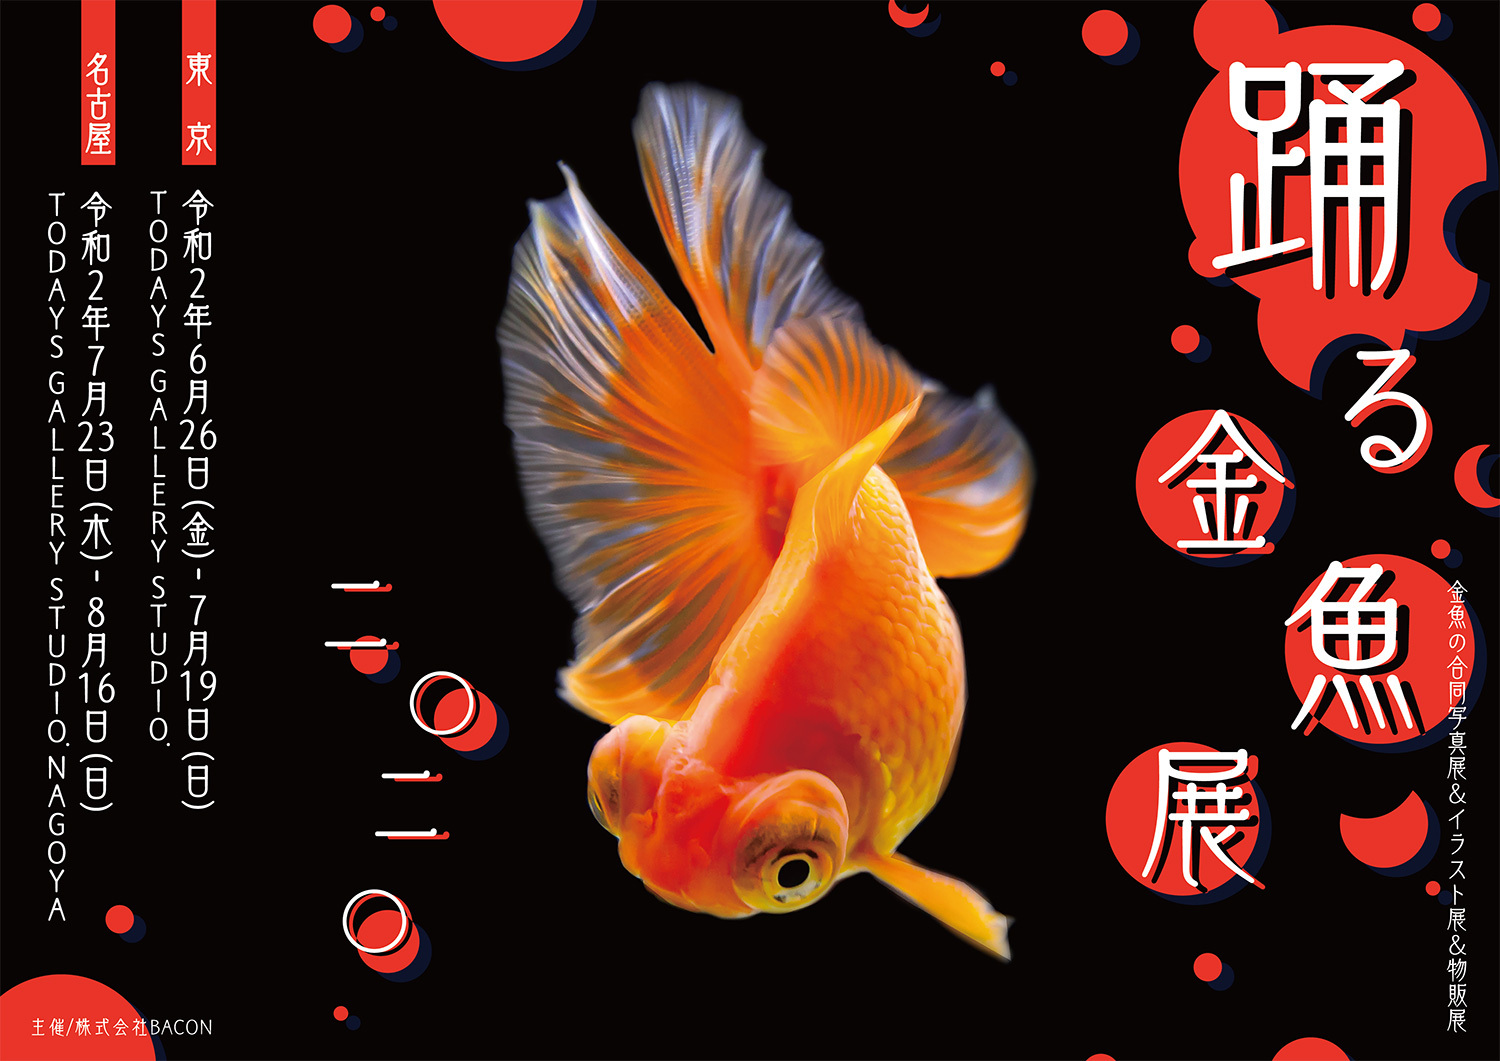 夏の風物詩 金魚 の優雅で美しい作品は 涼 と 癒し を感じる 踊る金魚展 が6月から東京 名古屋で開催 新作多数 株式会社baconのプレスリリース